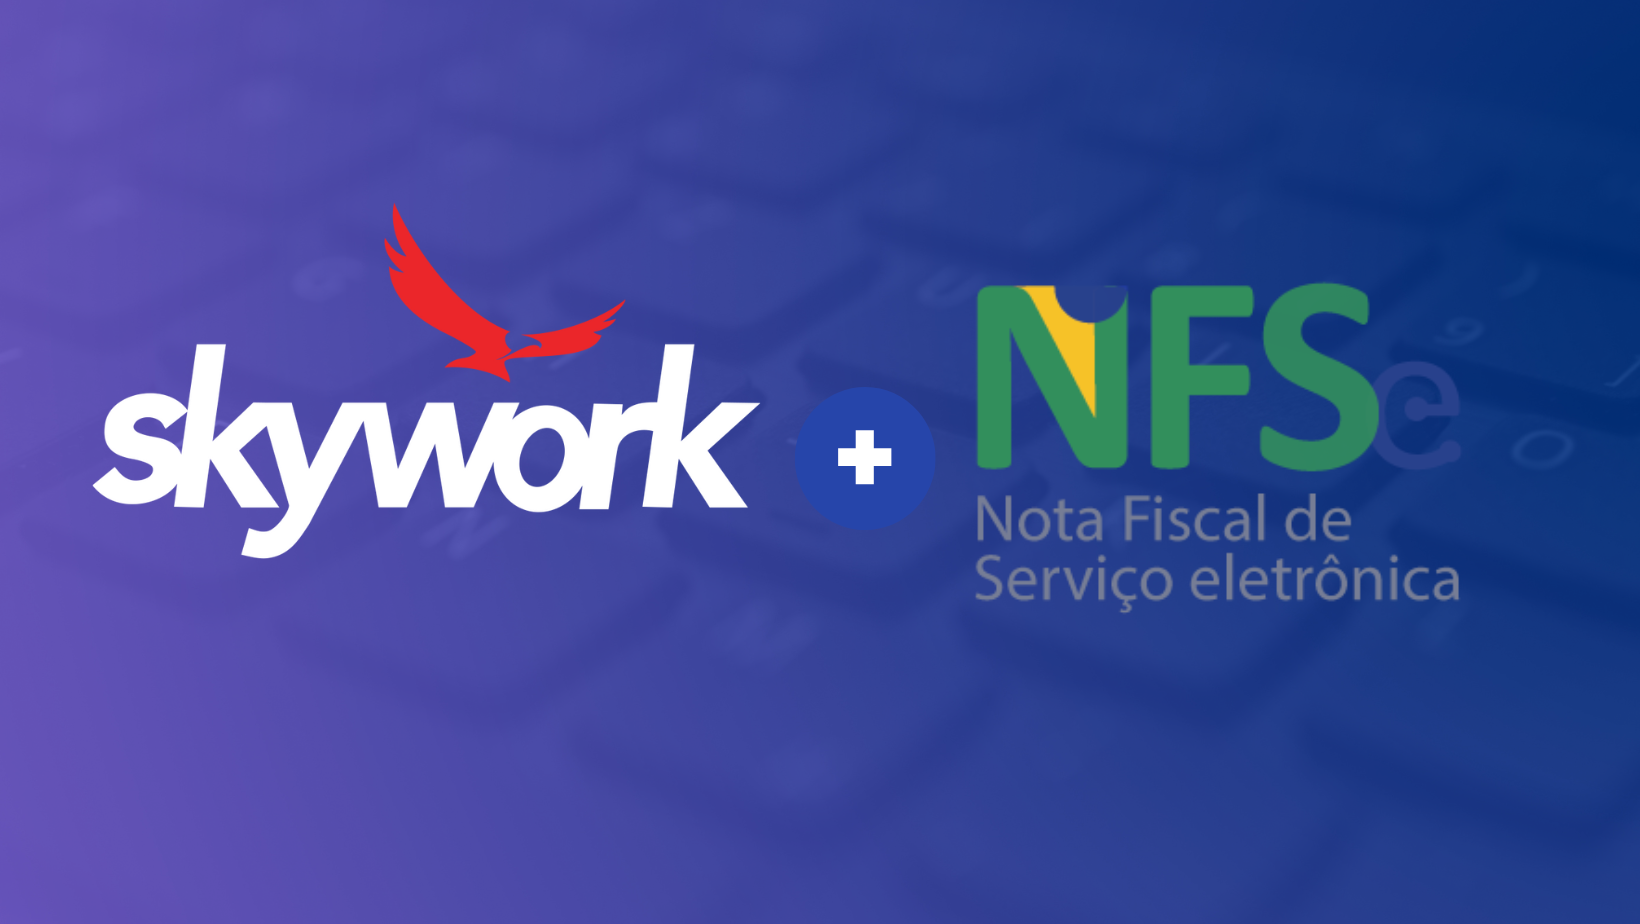 NFS-e nacional o que é e como funciona? - Skywork